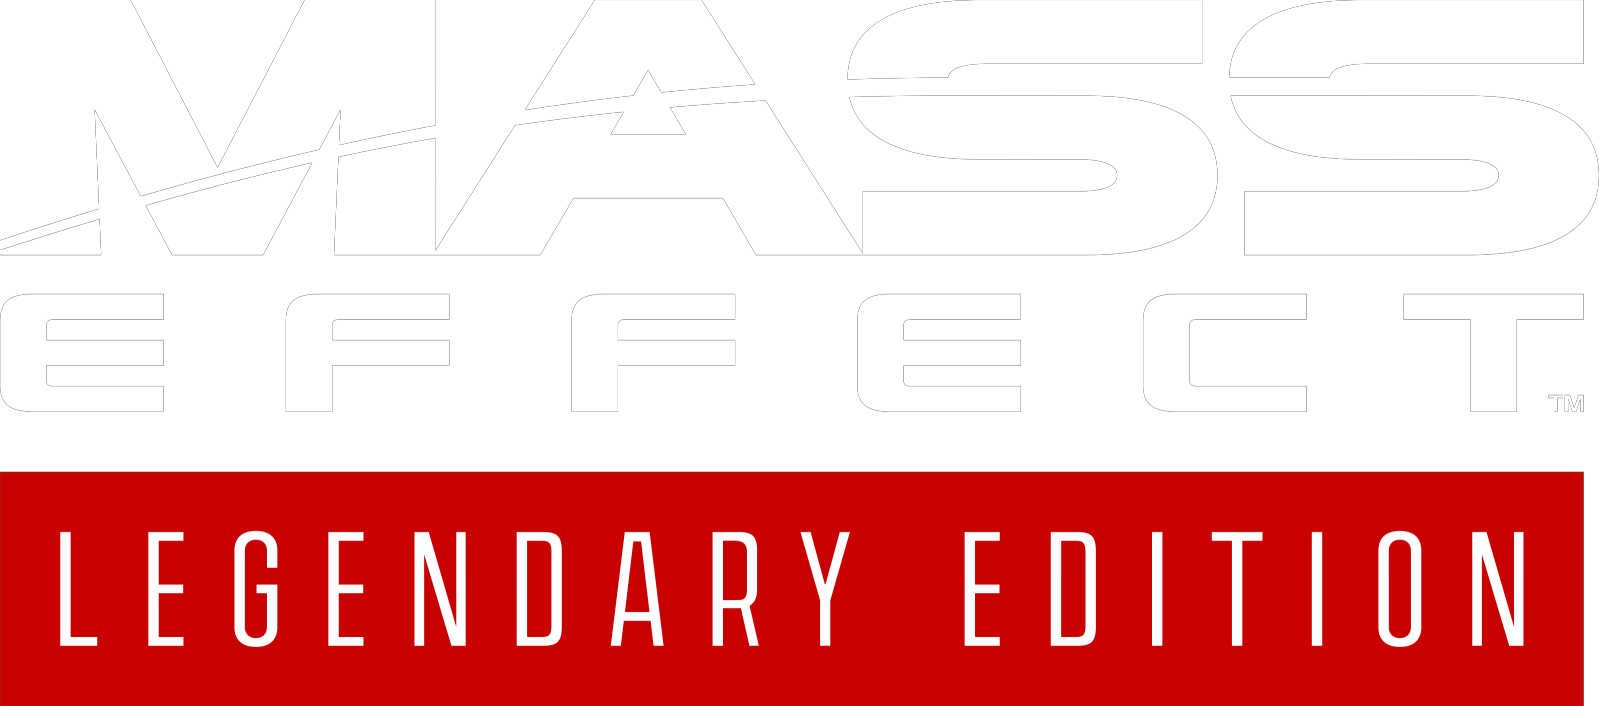 Mass Effect™ Legendary Edition Mass Effect Legendary Edition 100% Achievement Guide - Legendary Edition